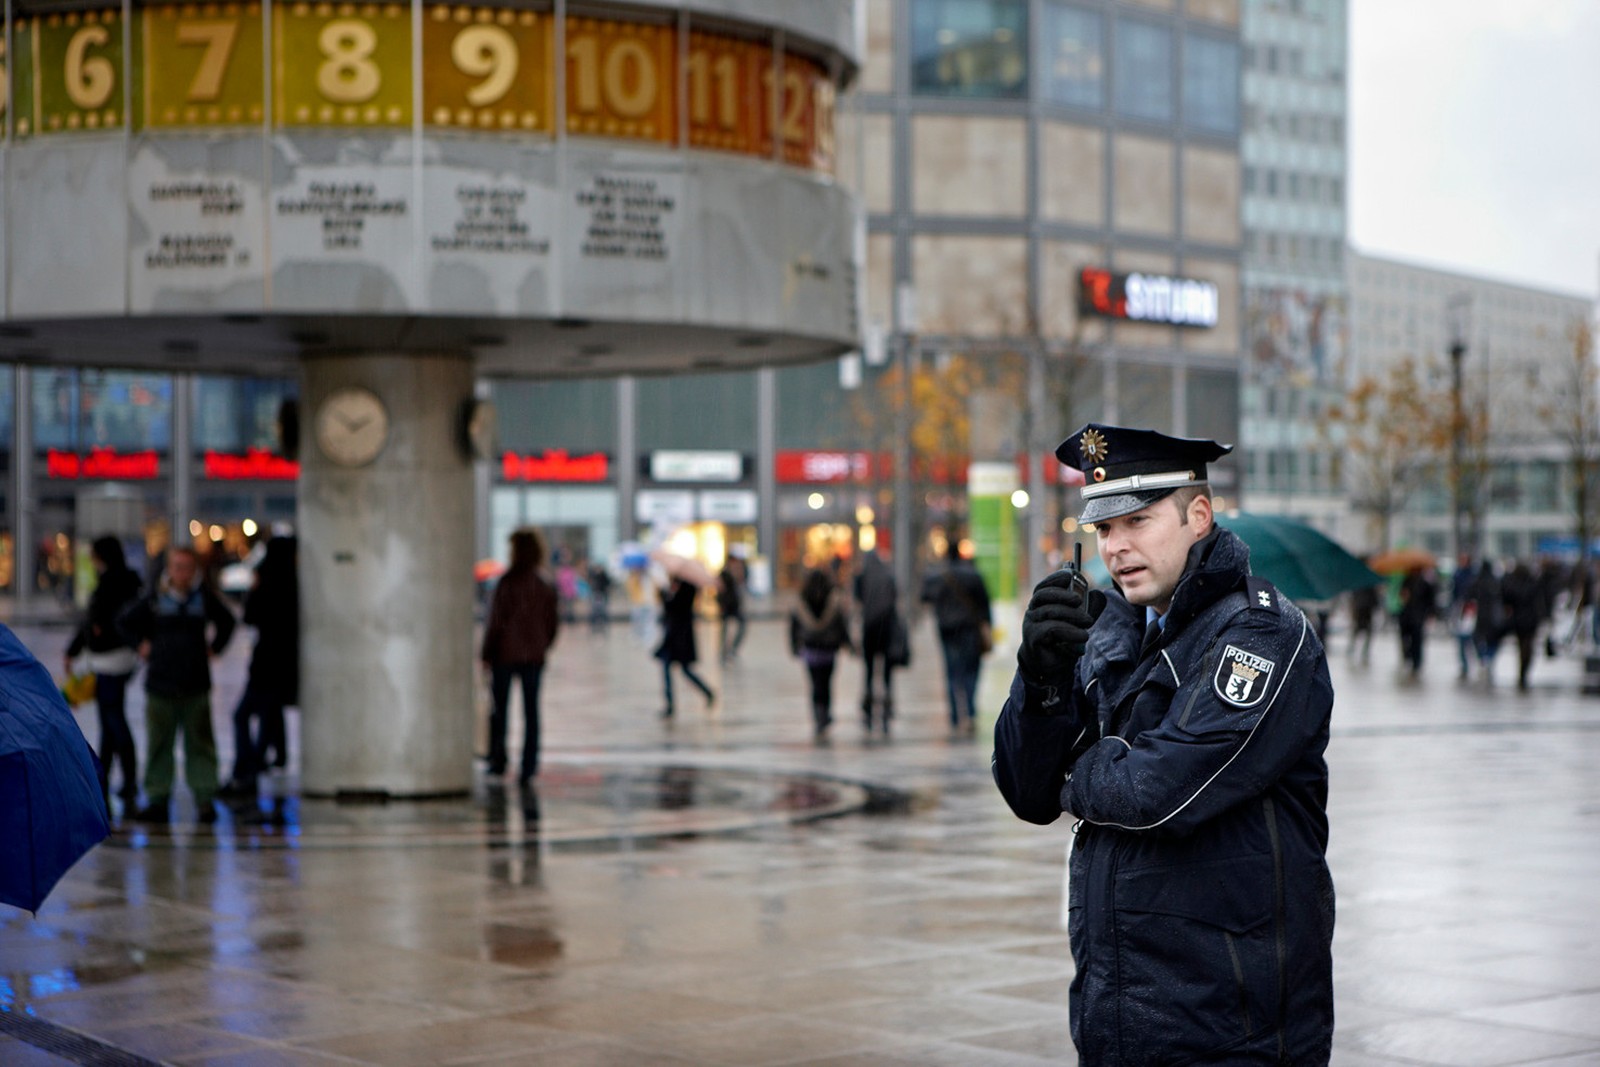 Motorola Solutions hat von der Polizei Berlin einen Auftrag erhalten, um für die 20.000 Digitalfunkgeräte eine sichere Kommunikation zu gewährleisten.